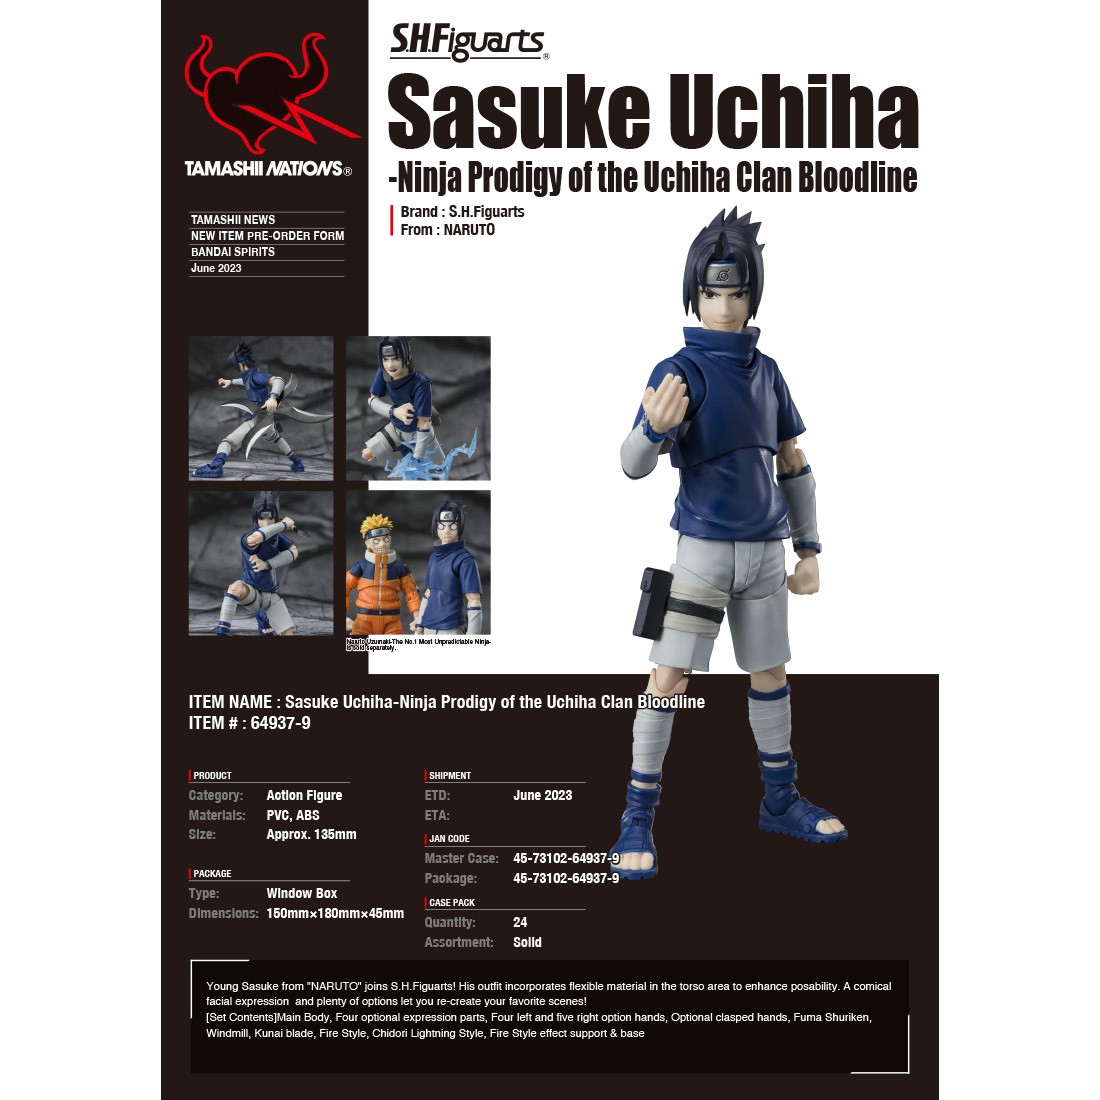 TAMASHII NATIONS Sasuke Uchiha Ninja Prodigy of The Uchiha Clan